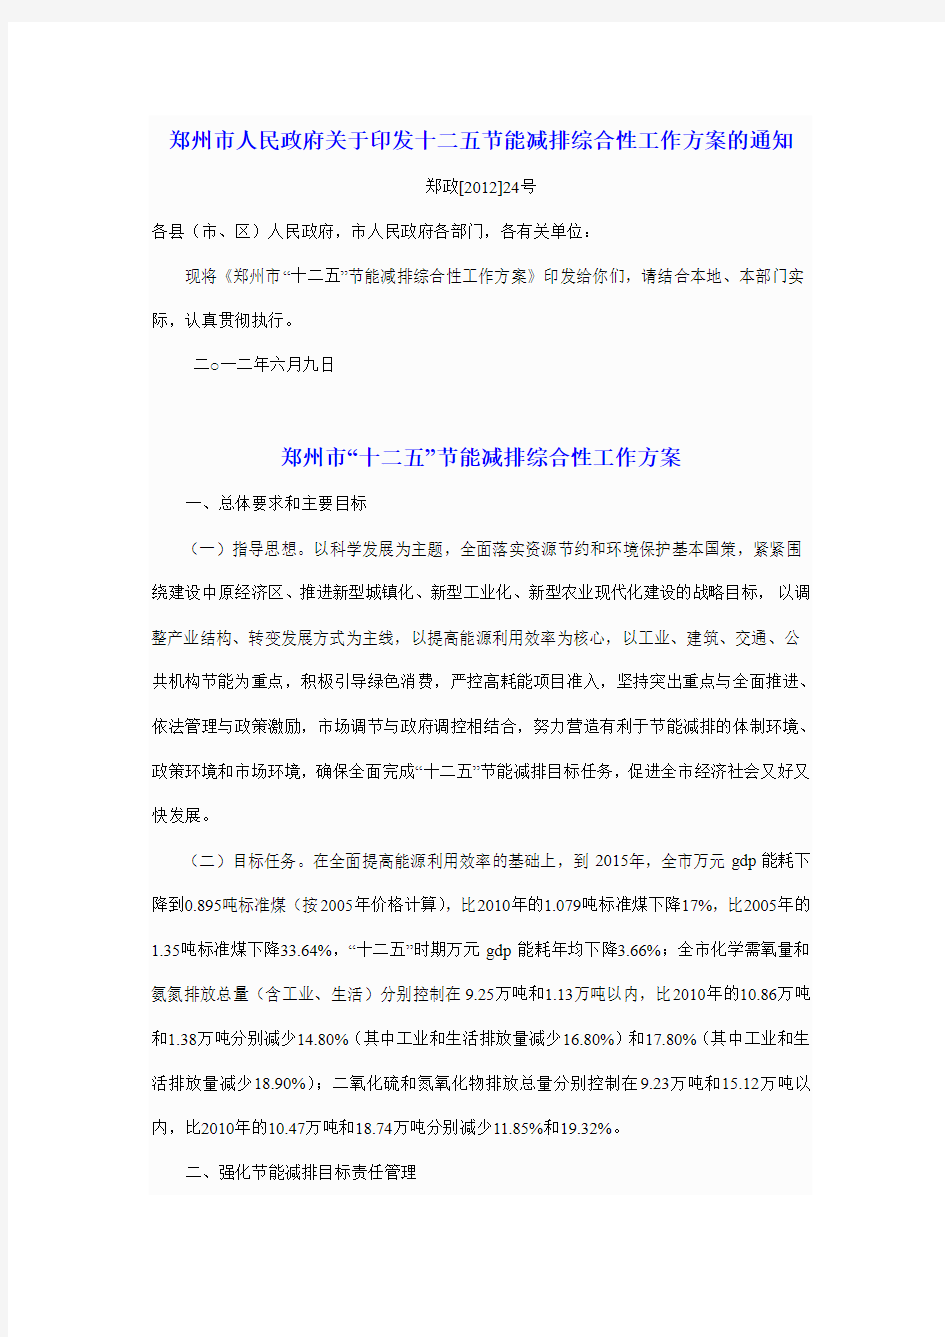 郑州市人民政府关于印发十二五节能减排综合性工作方案的通知